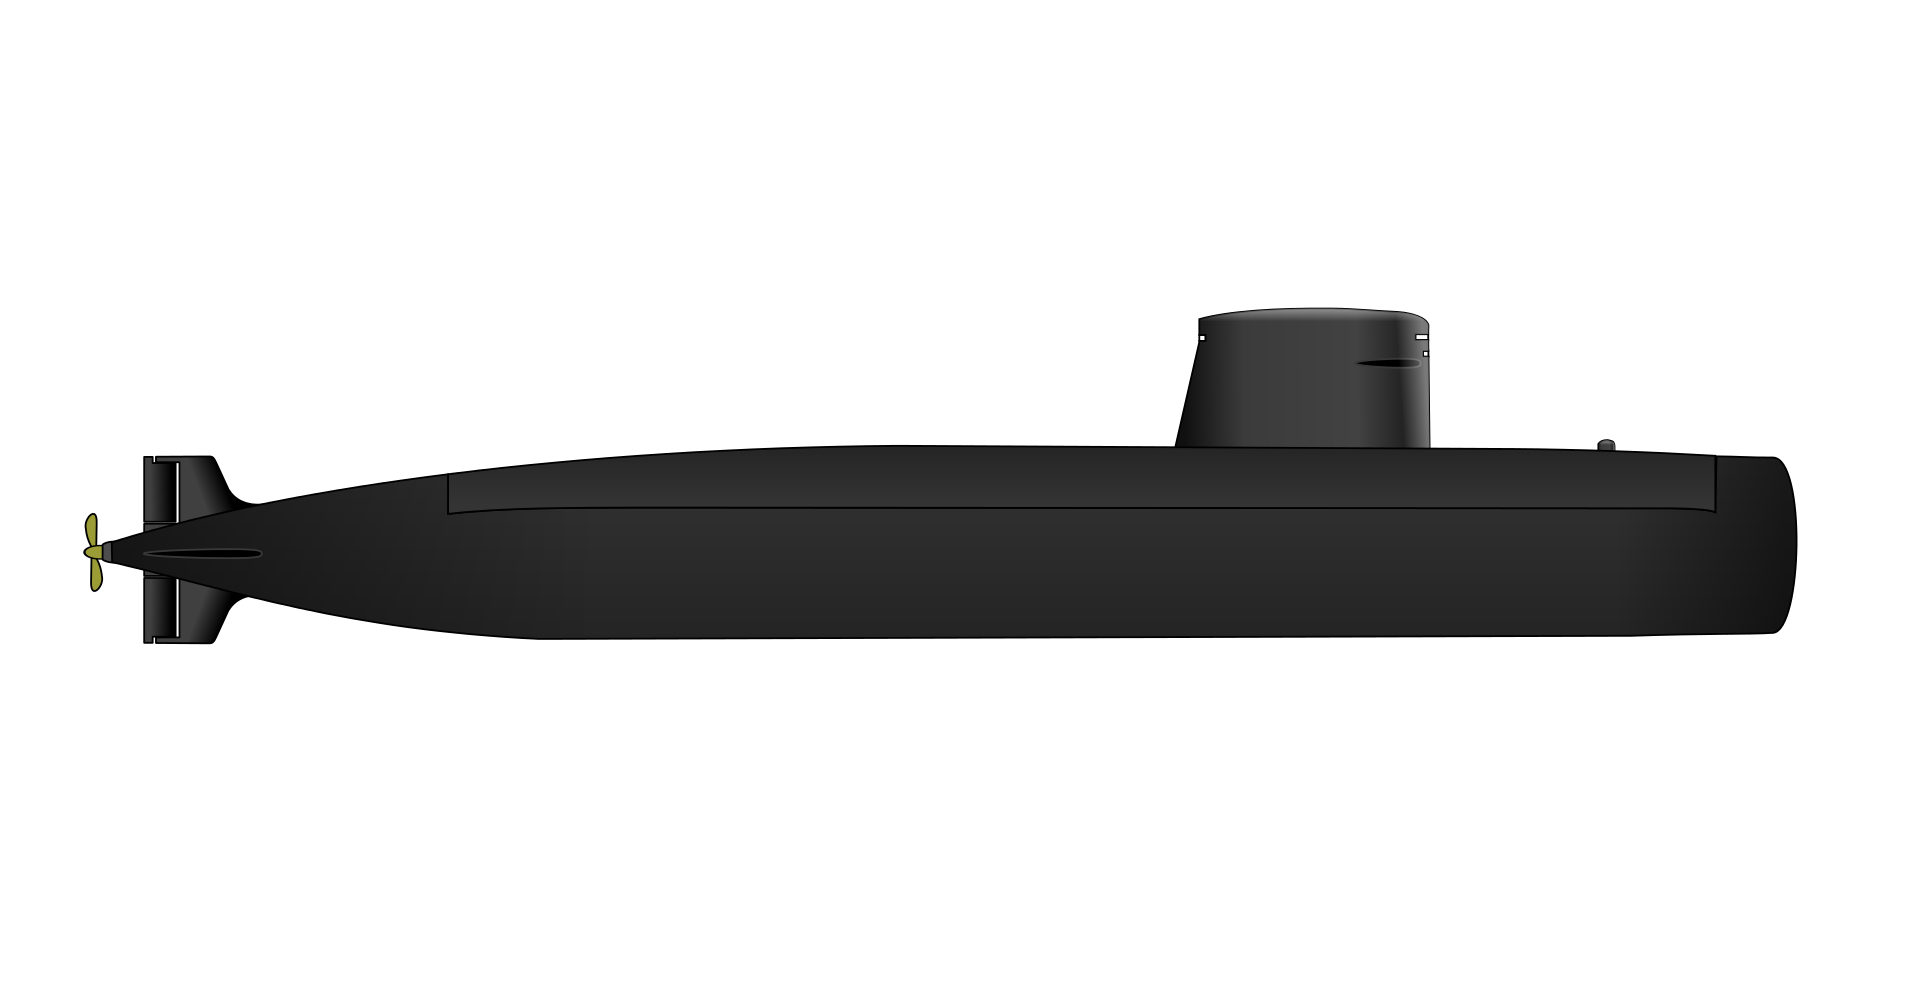 Rubis_class_submarine-2